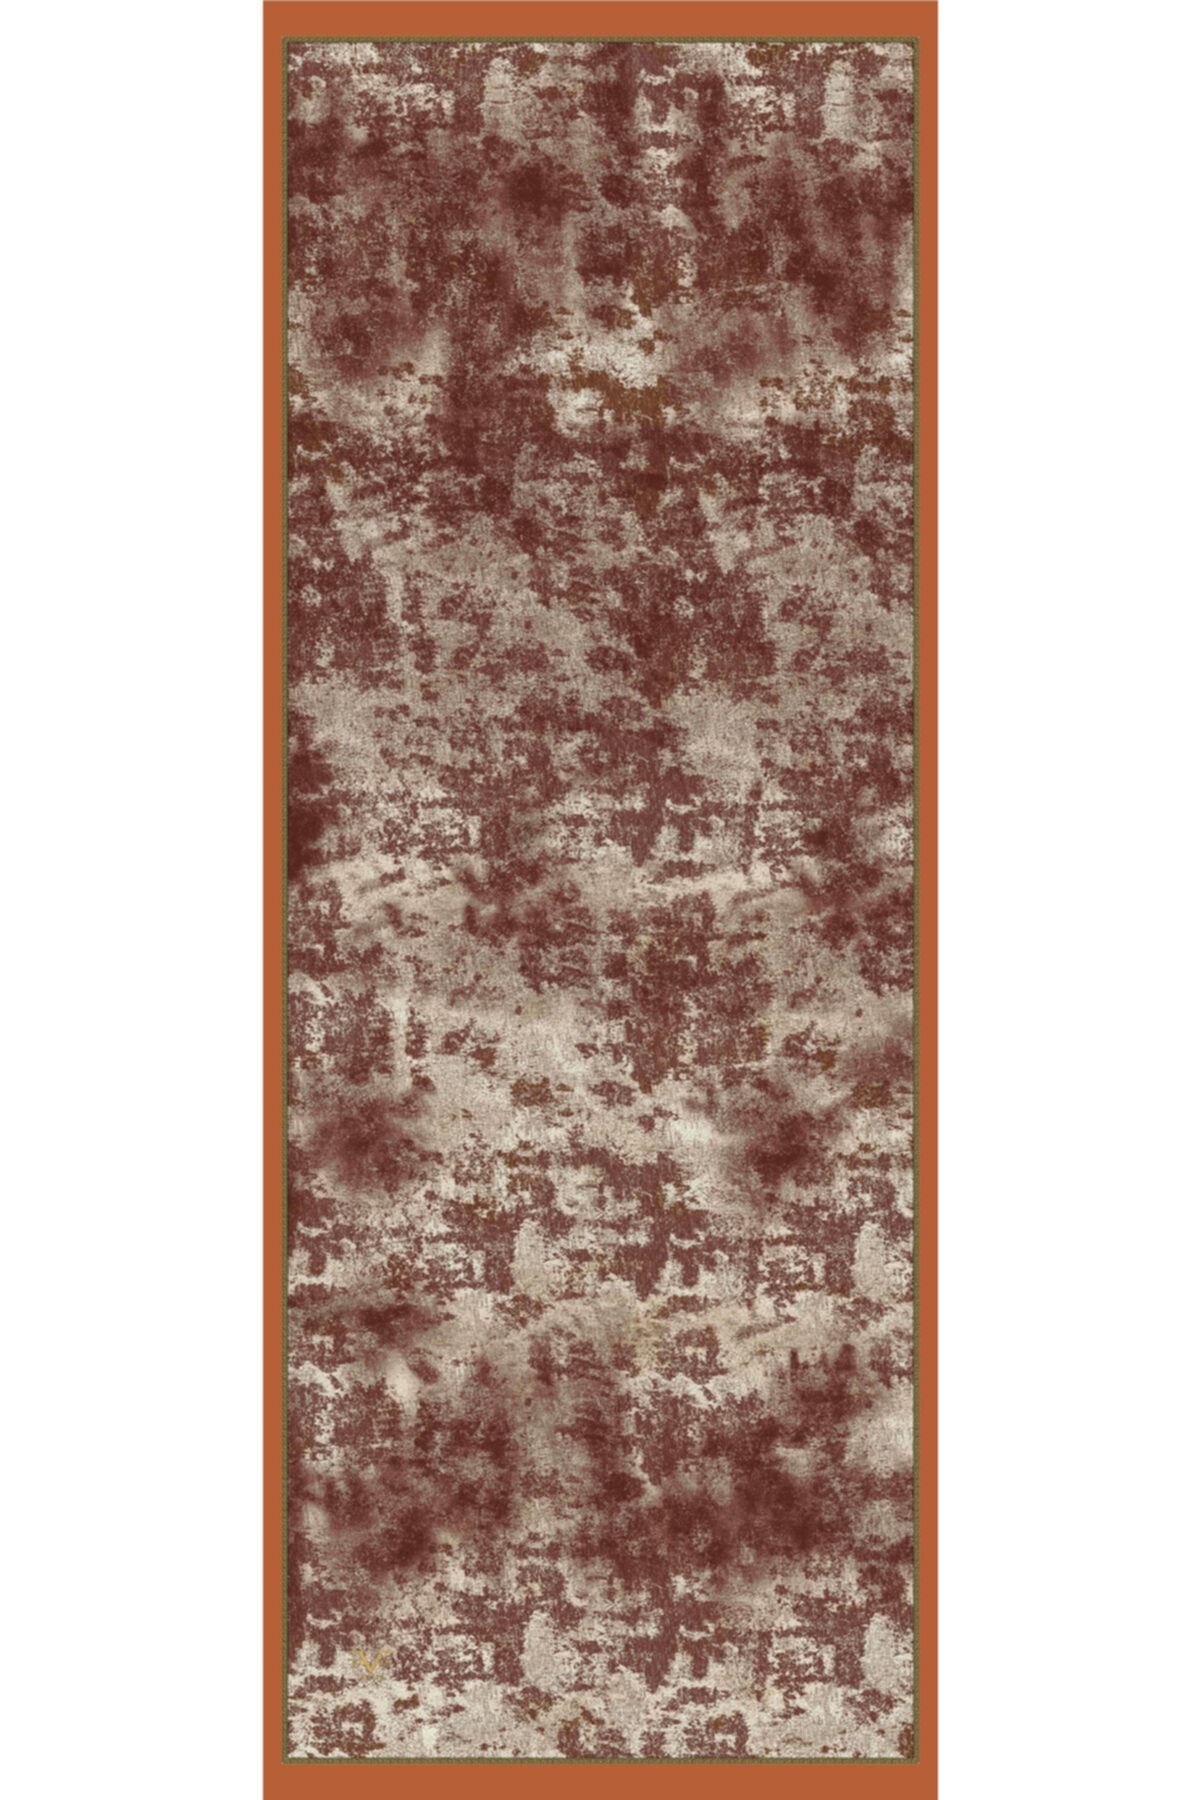 19V69 ITALIA Taba Kahverengi Şal Eskitme Desen Modal Seri Eşarp Askısı Ve Hediyelik Seti Ile Birlikte 75x200 Cm